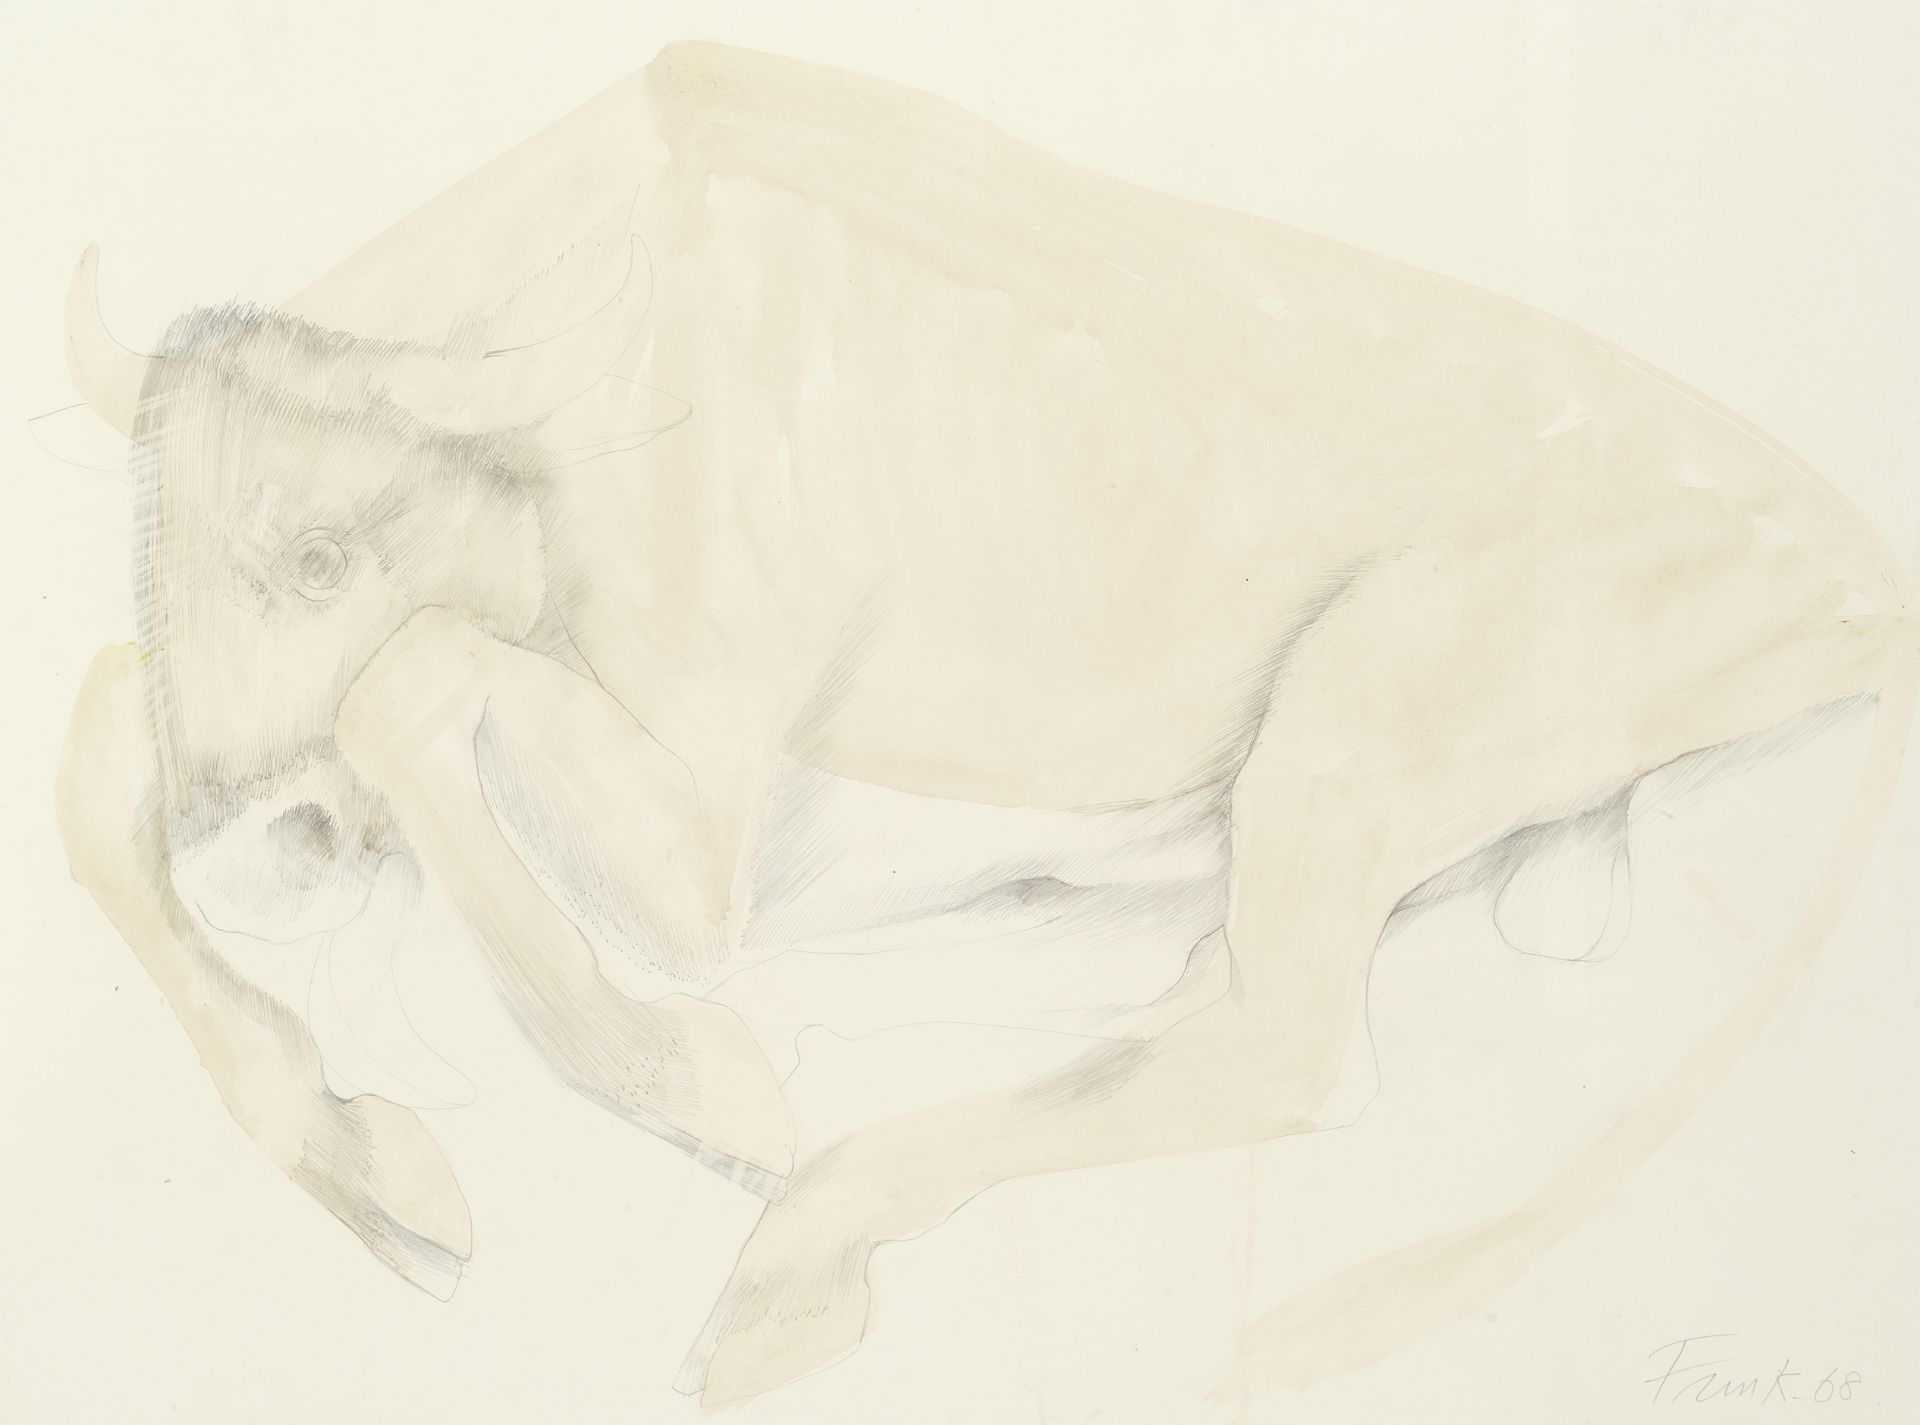 Dame Elisabeth Frink R.A. (British, 1930-1993) Bull Lying Down